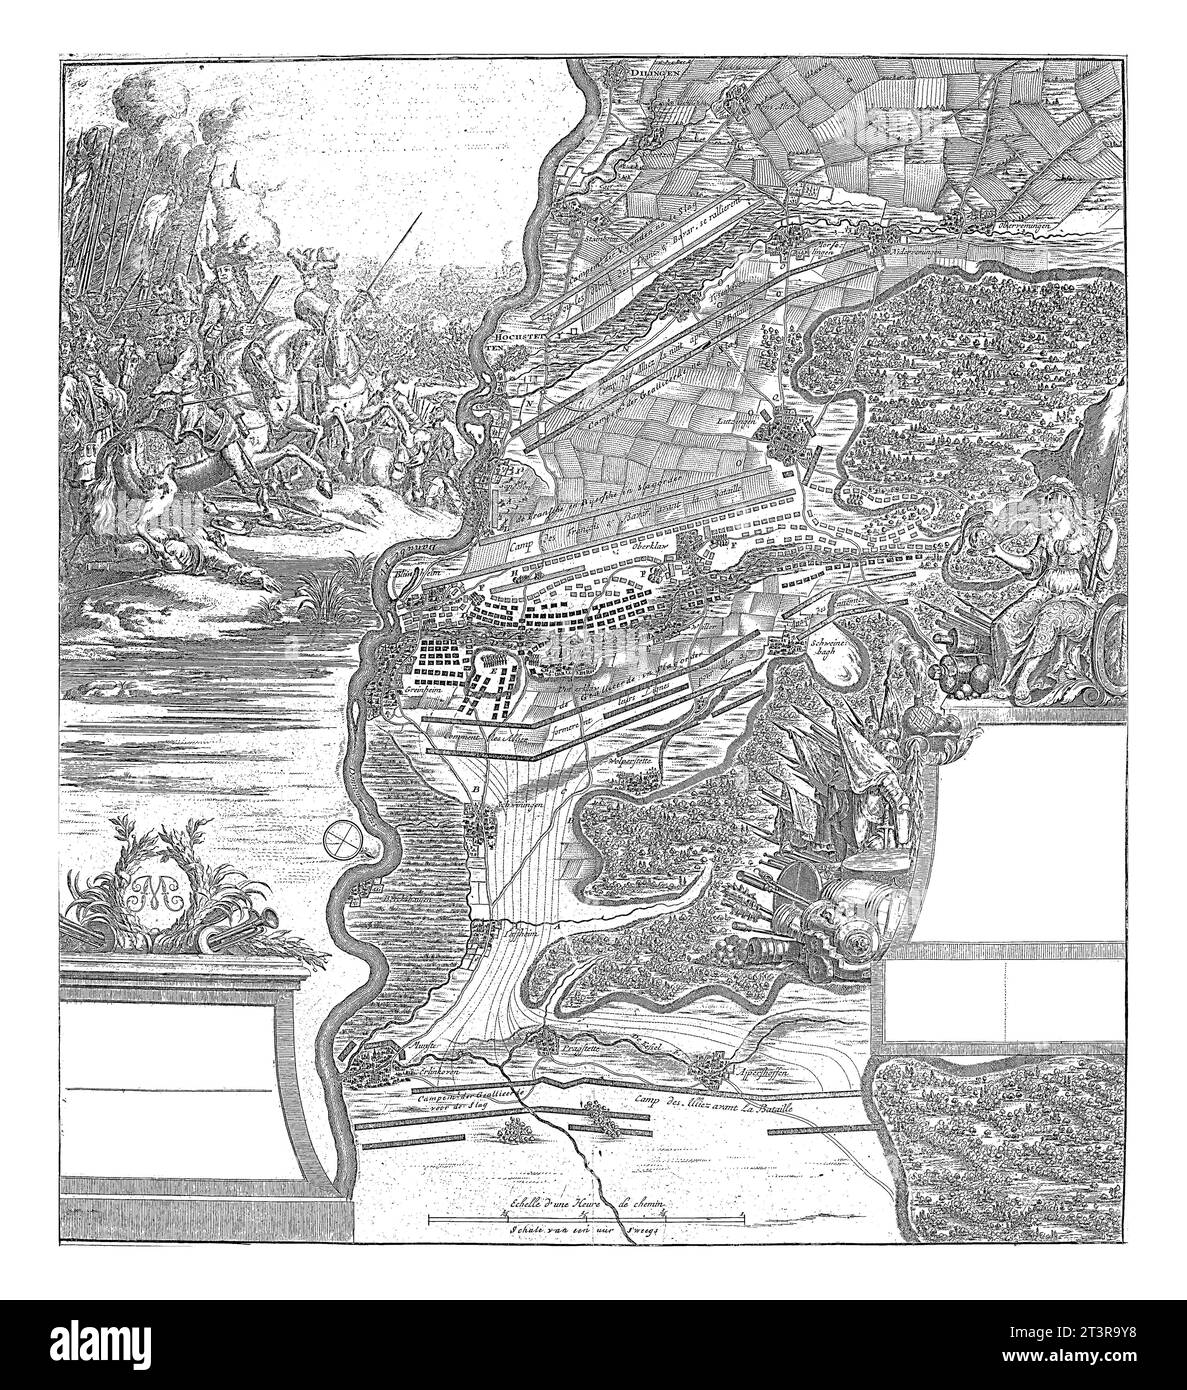 Bataille de Hachstaedt, 1704, Jan van Vianen, 1729 carte de la bataille de Hachstaedt (bataille de Blenheim) avec une victoire alliée sur les Français, 13 Augus Banque D'Images